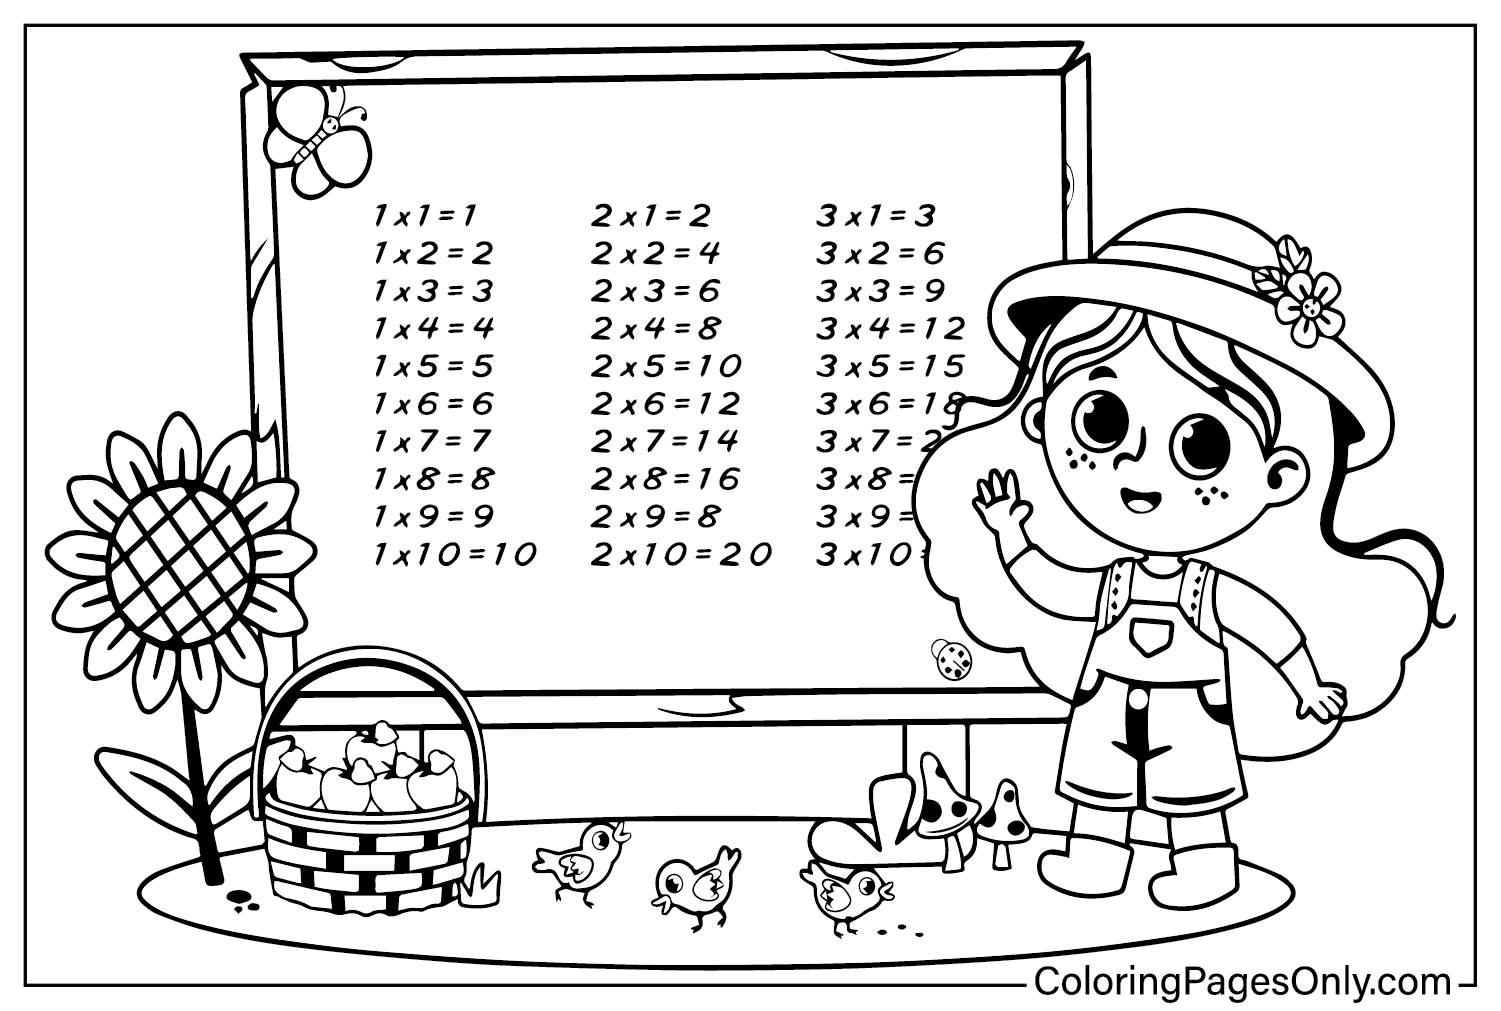 Tableau de multiplication de pages couleur à partir du tableau de multiplication